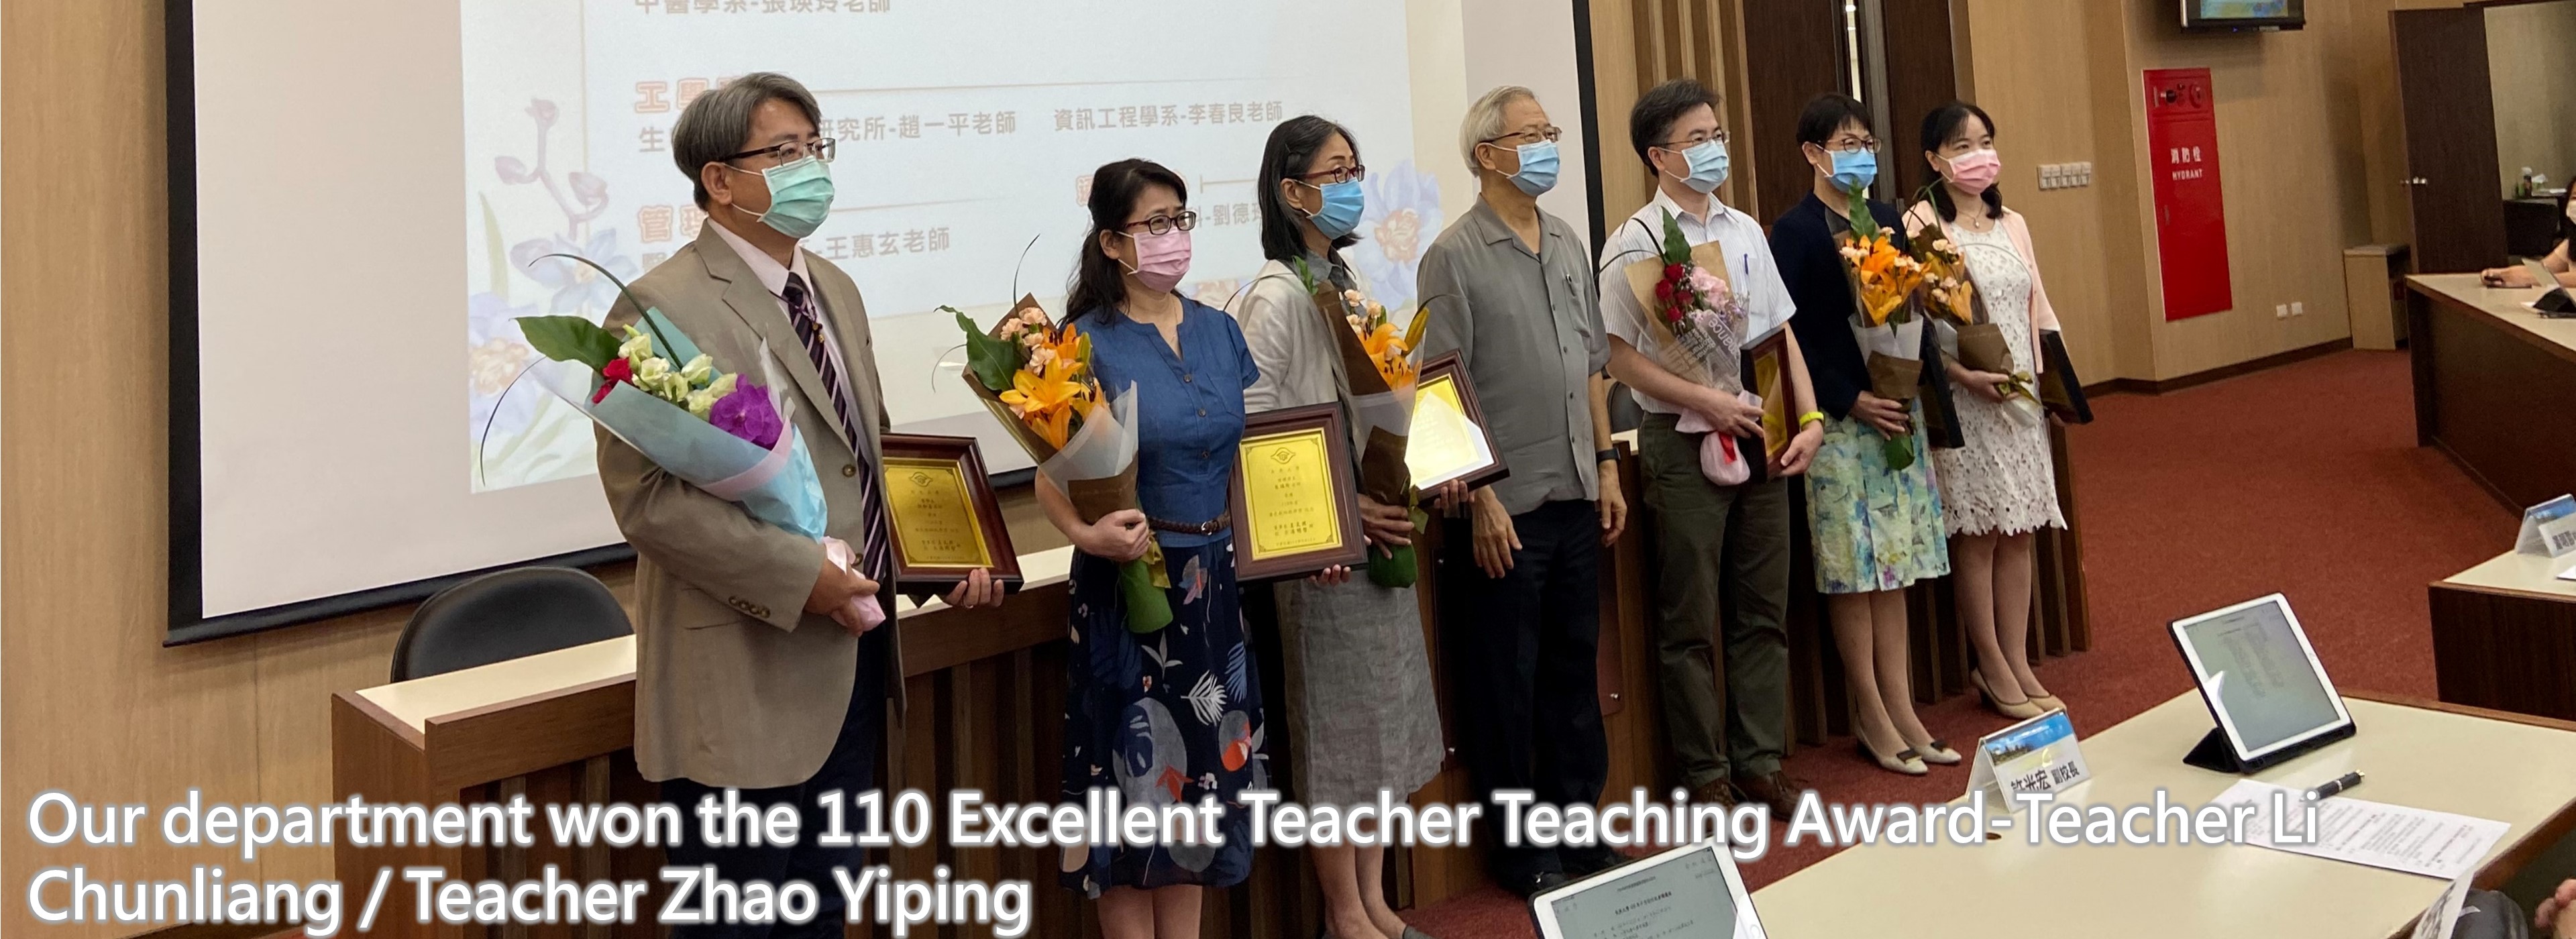 Our department won the 110 Excellent Teacher Teaching Award-Teacher Li Chunliang / Teacher Zhao Yiping